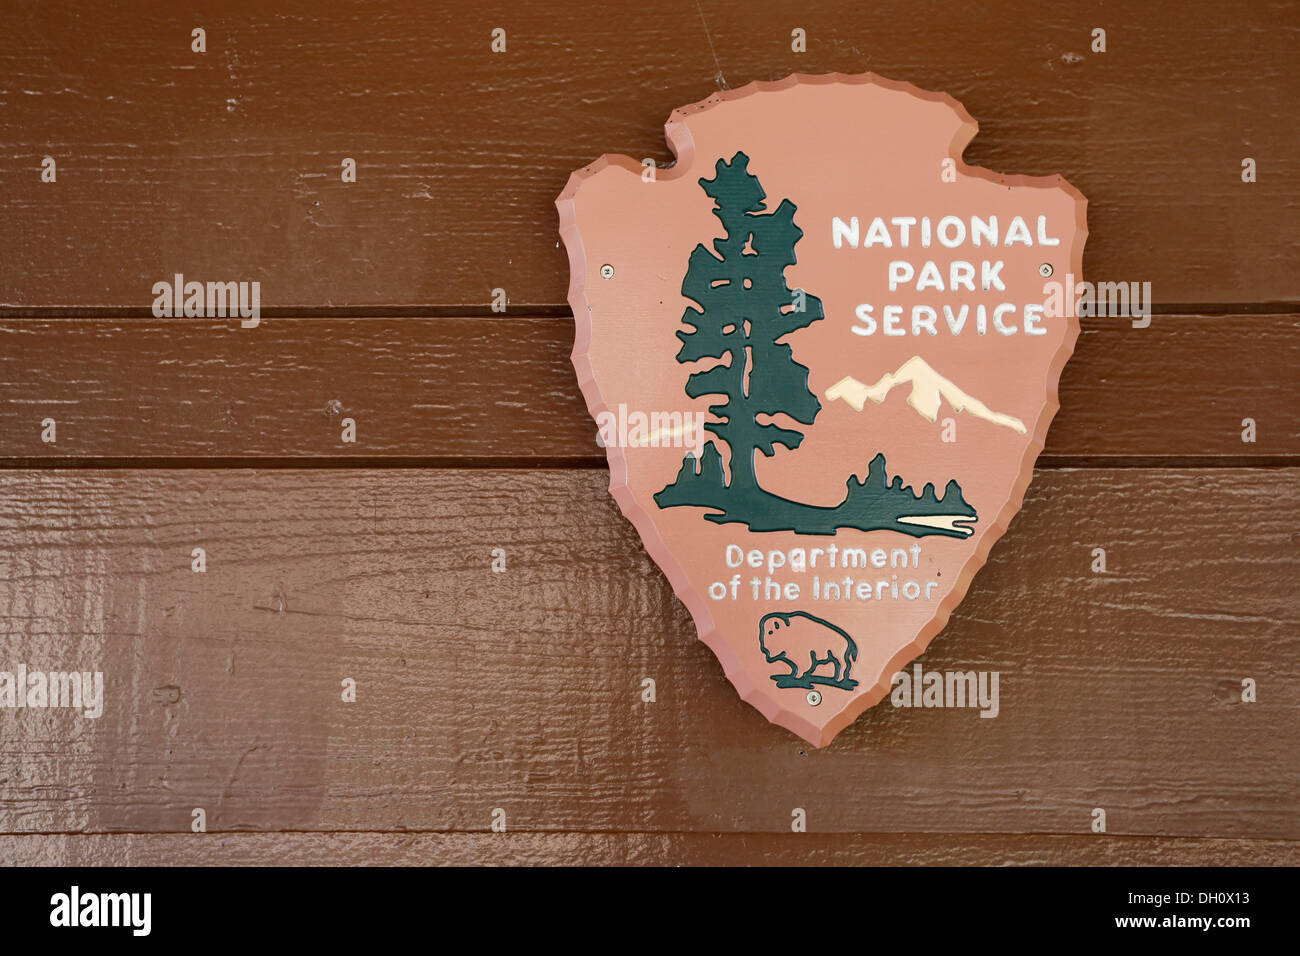 La punta de flecha, el emblema oficial de la National Park Service con un árbol sequoia, un bisonte, Agua y montañas, EE.UU., América Foto de stock